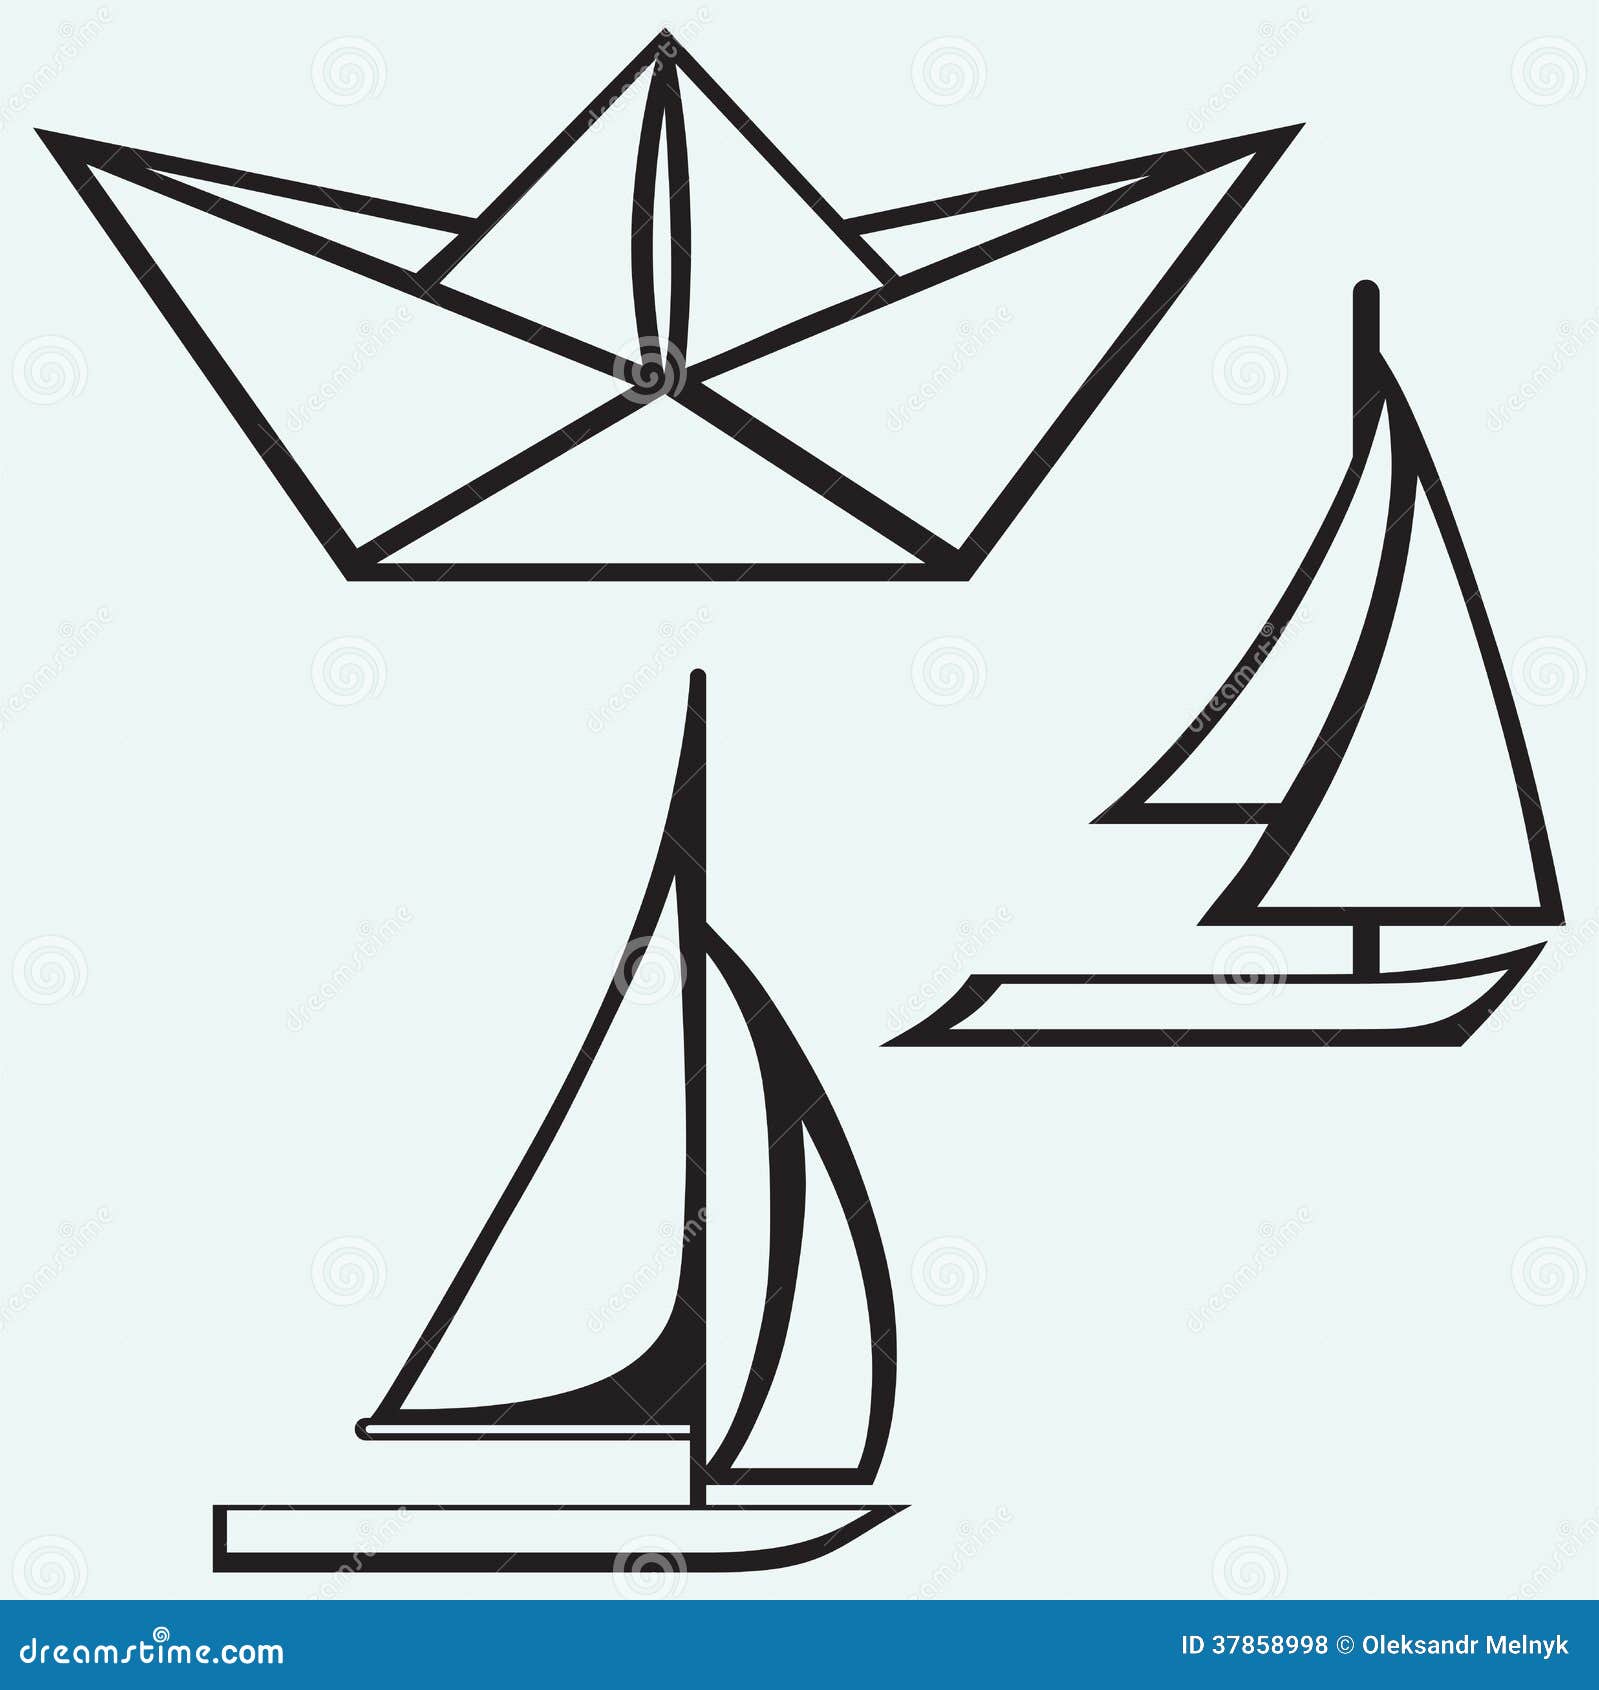 Origami Paper Ship And Sailboat Sailing Royalty Free Stock Photos 